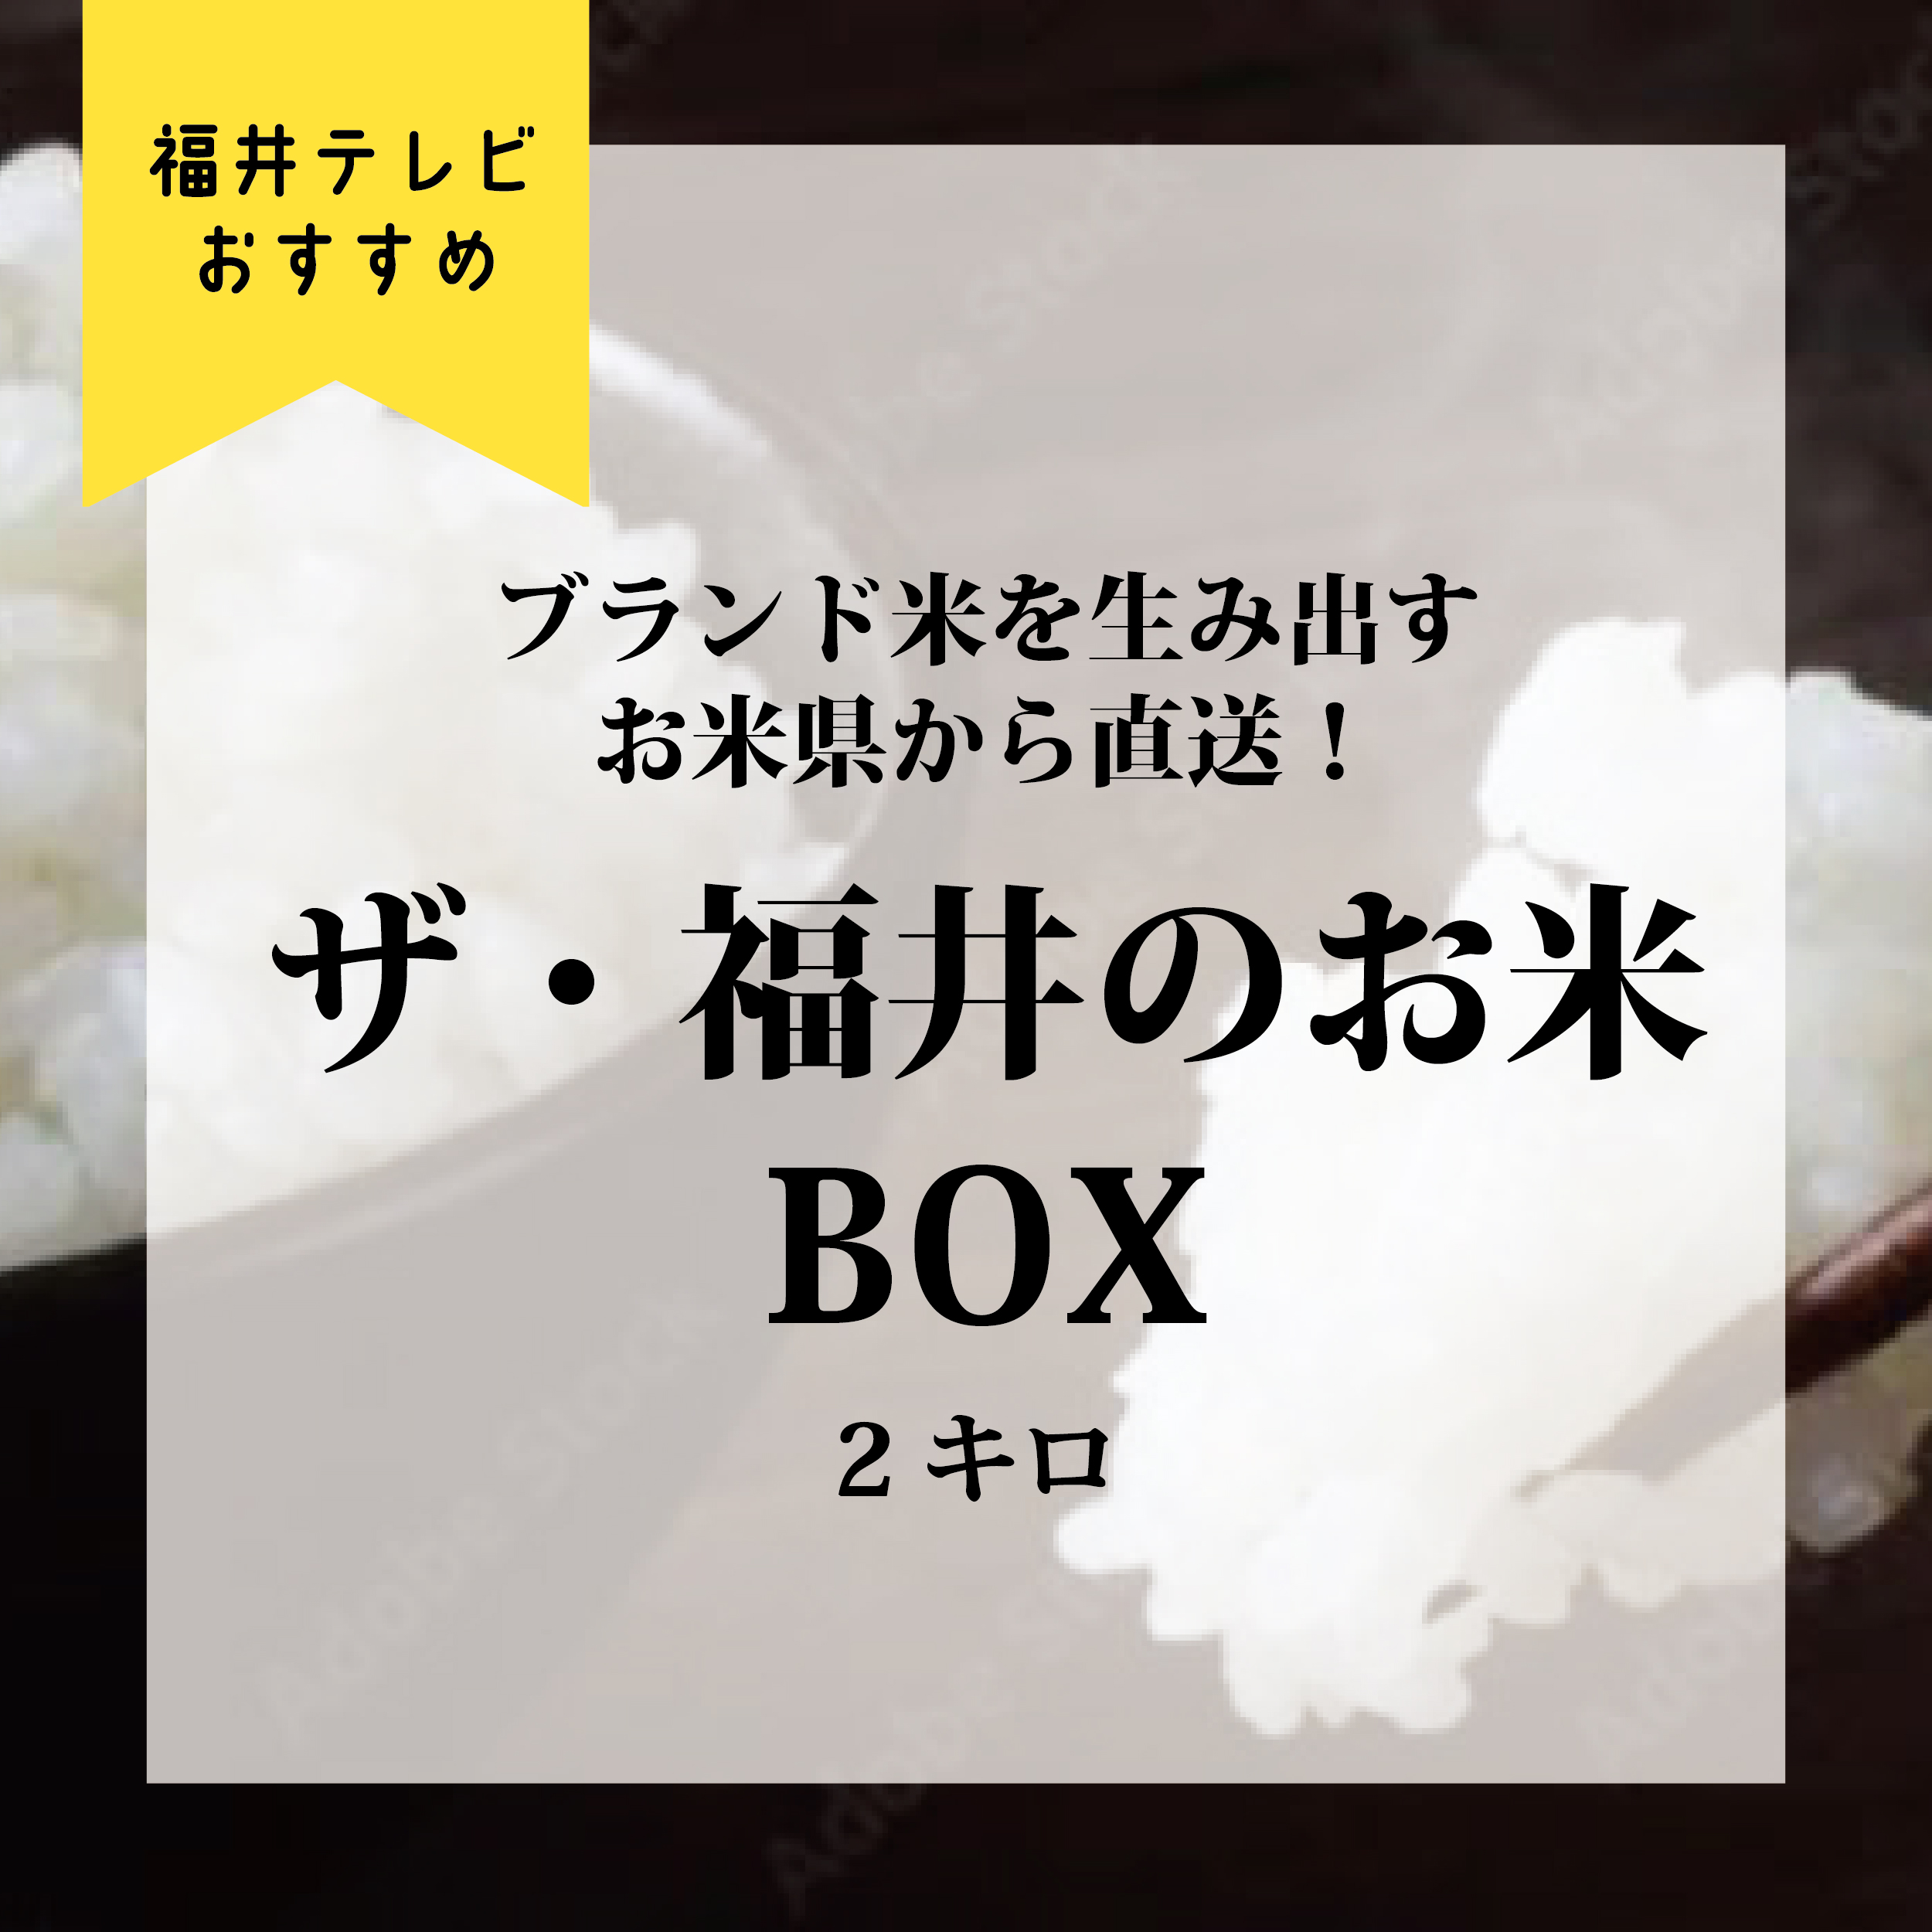 ブランド米を生み出すお米県から直送！ザ・福井のお米BOX